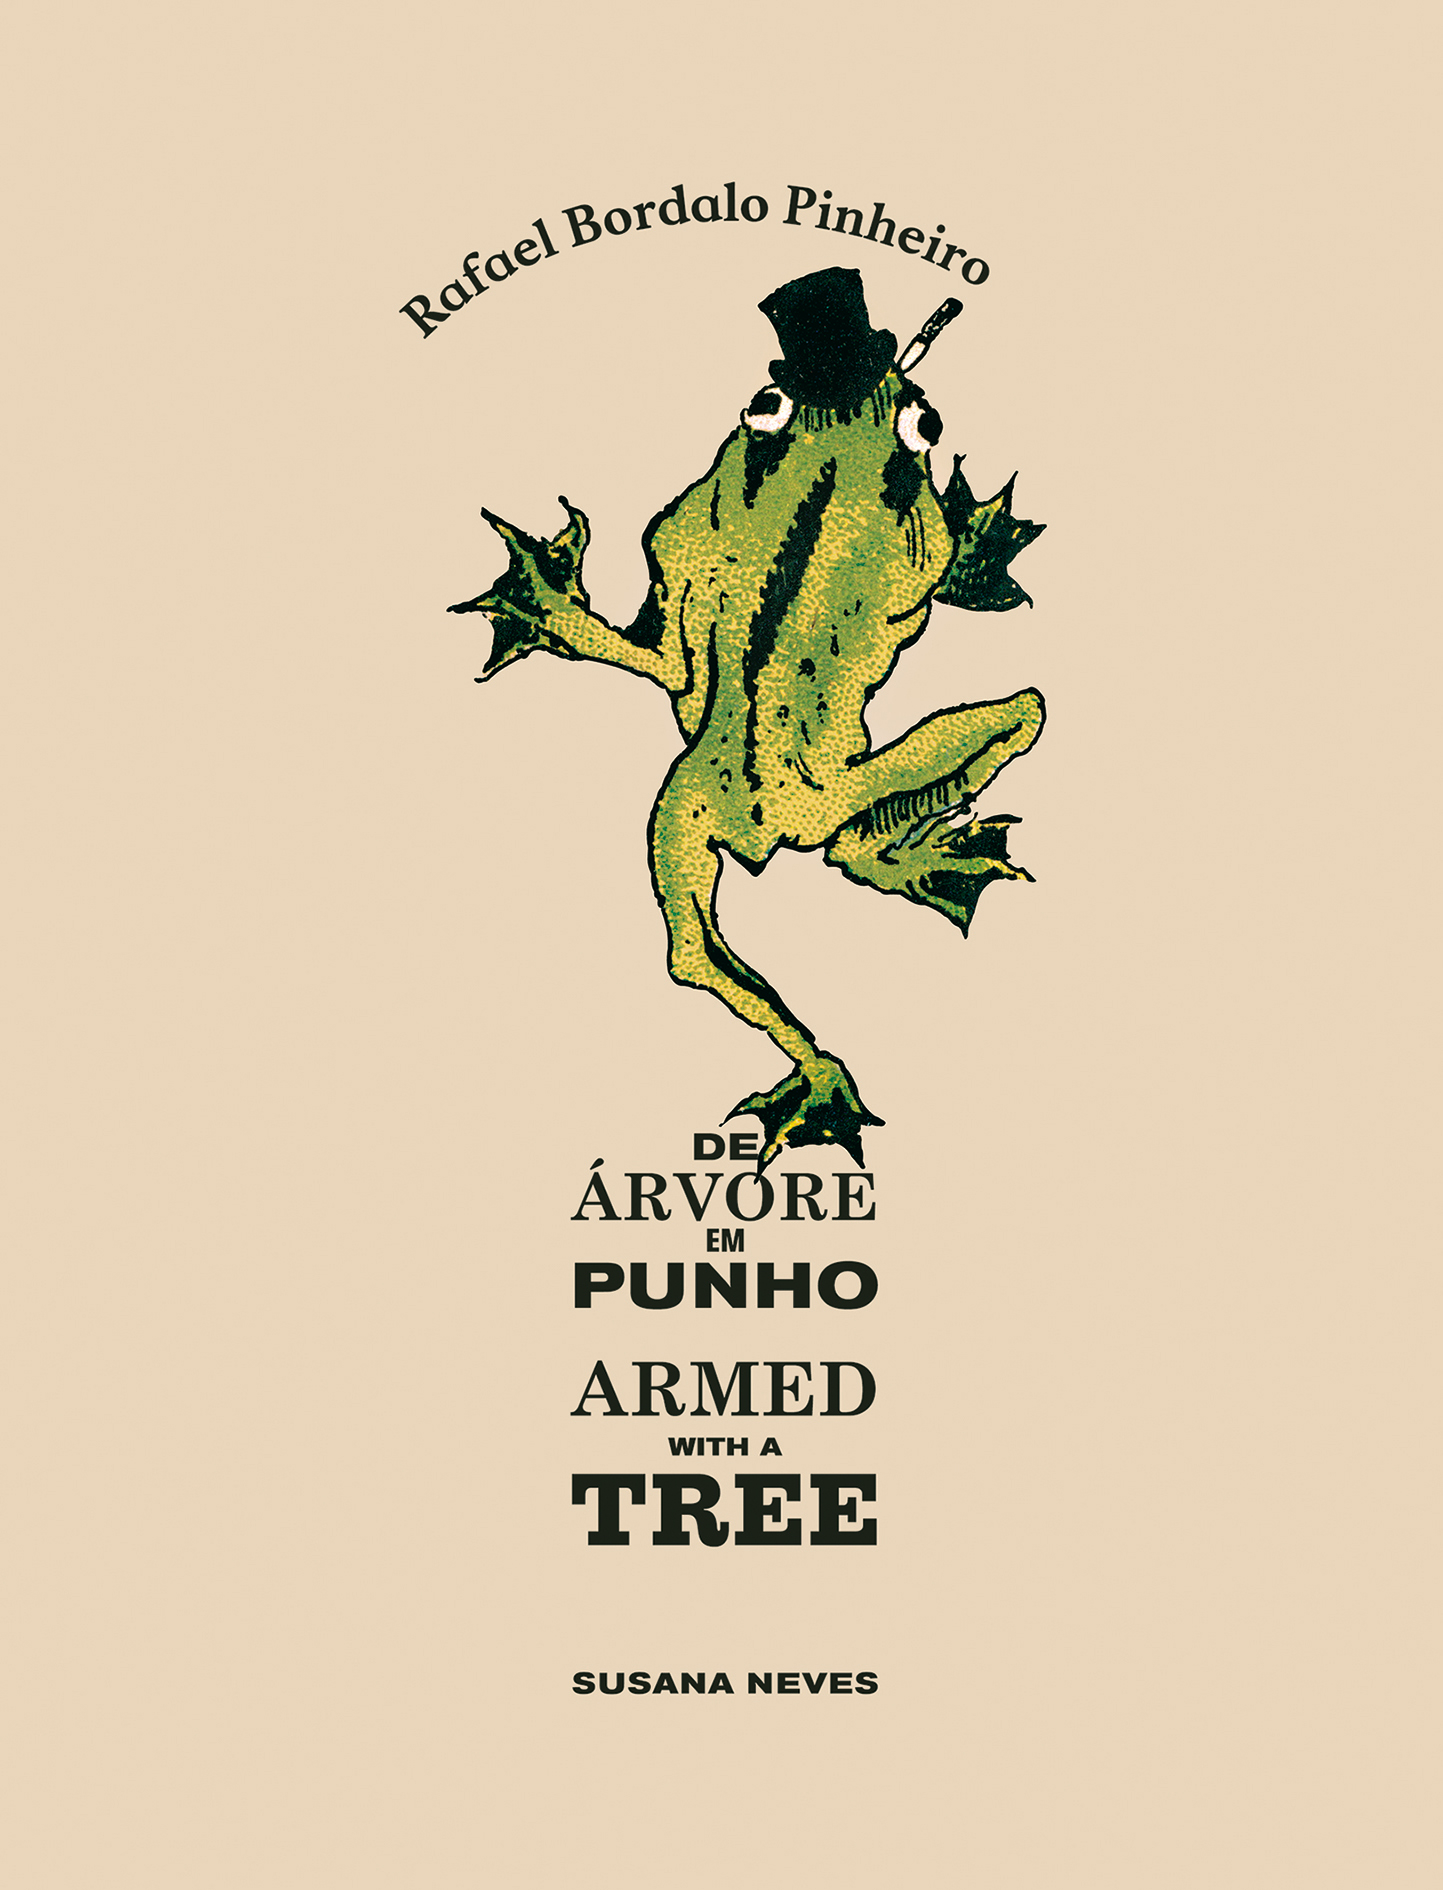 Capa do livro 'Rafael Bordalo Pinheiro - De árvore em punho', de Susana Neves